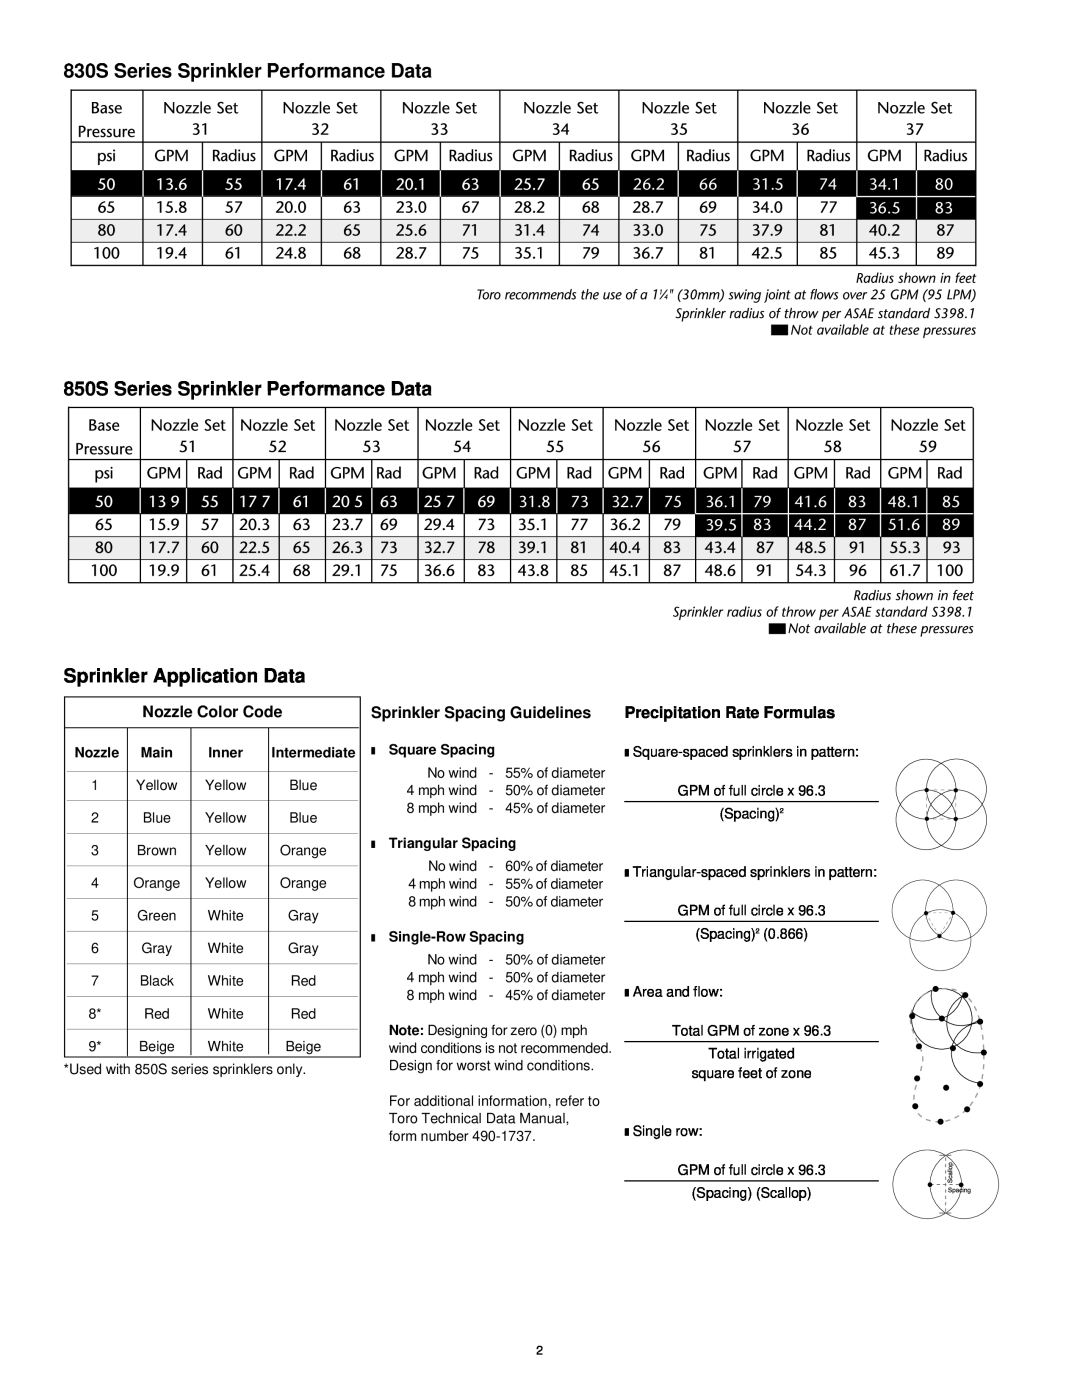 Toro 830S Series Sprinkler Performance Data, 850S Series Sprinkler Performance Data, Sprinkler Application Data, 26.2 